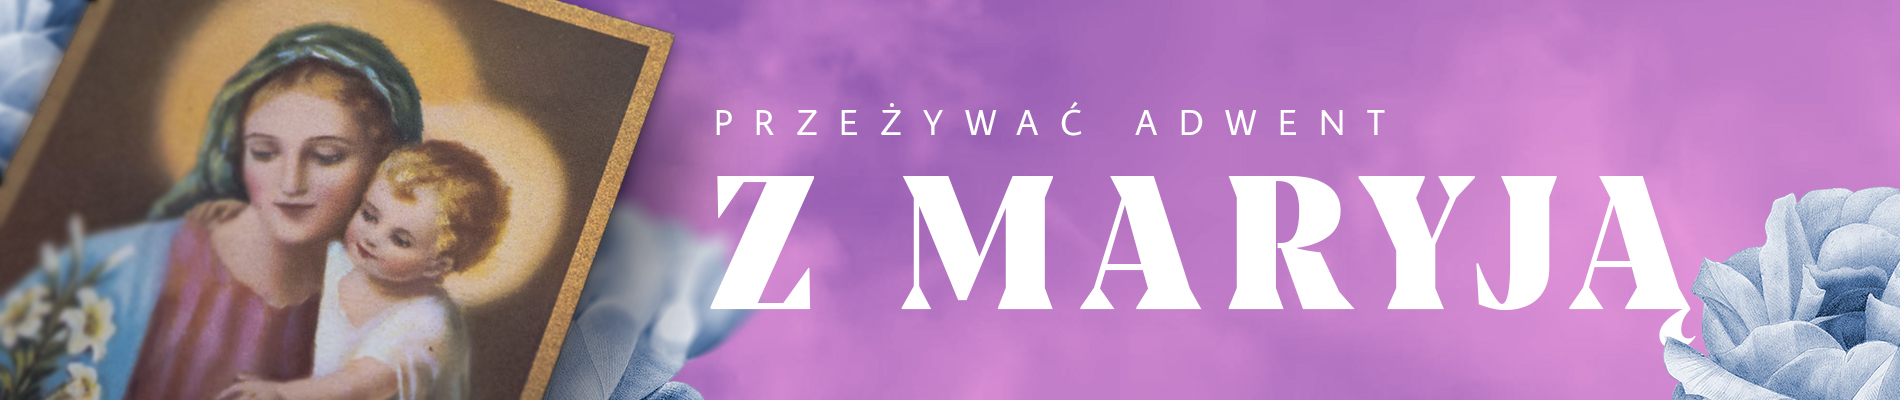 adwent-Z-MARYJA copy